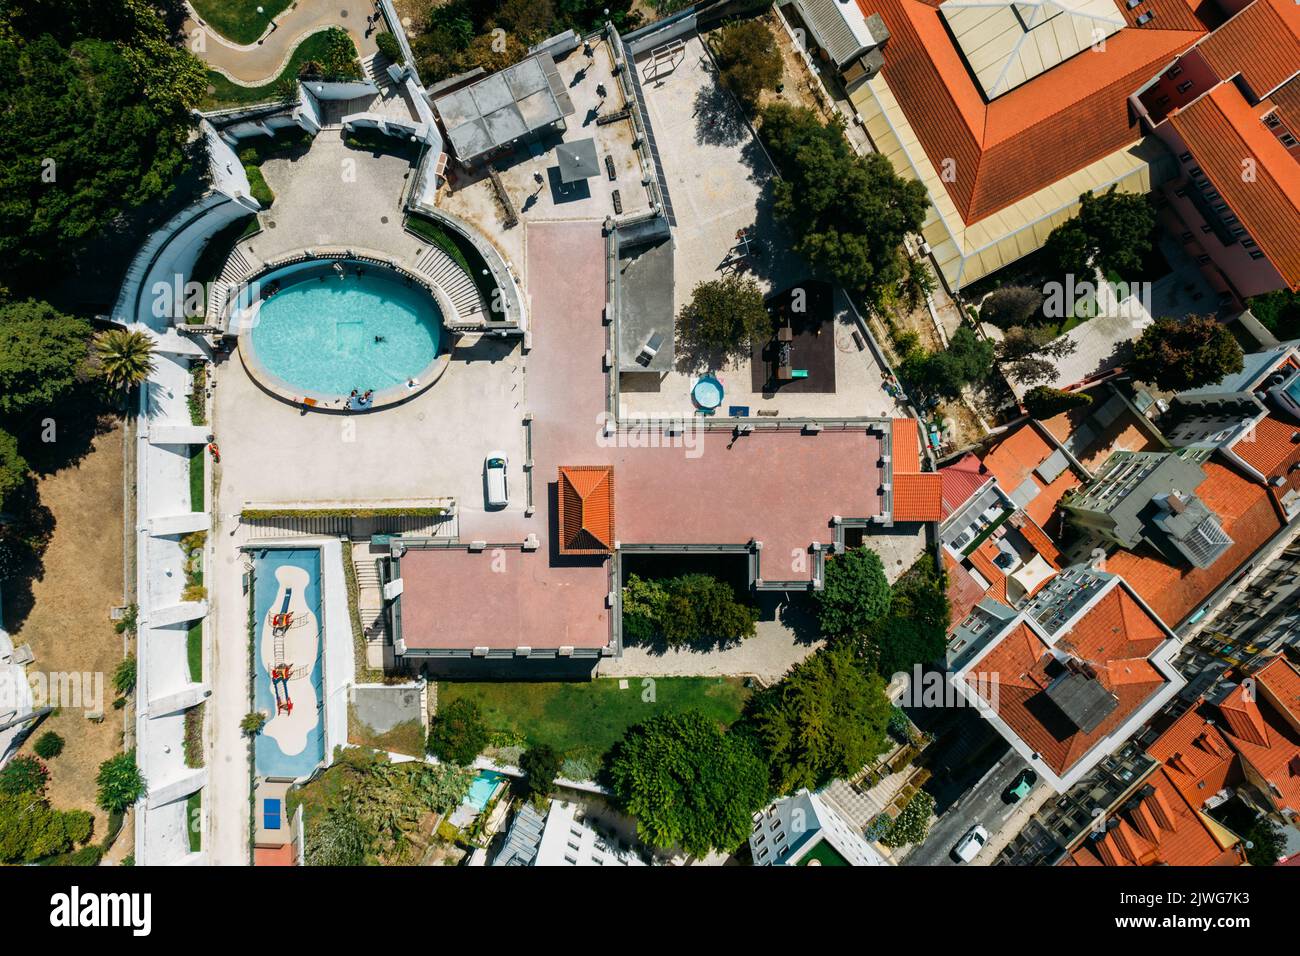 Vista dall'alto verso il basso del Torel Garden a Lisbona, Portogallo, con un grande stagno che diventa una piscina/spiaggia durante l'estate Foto Stock